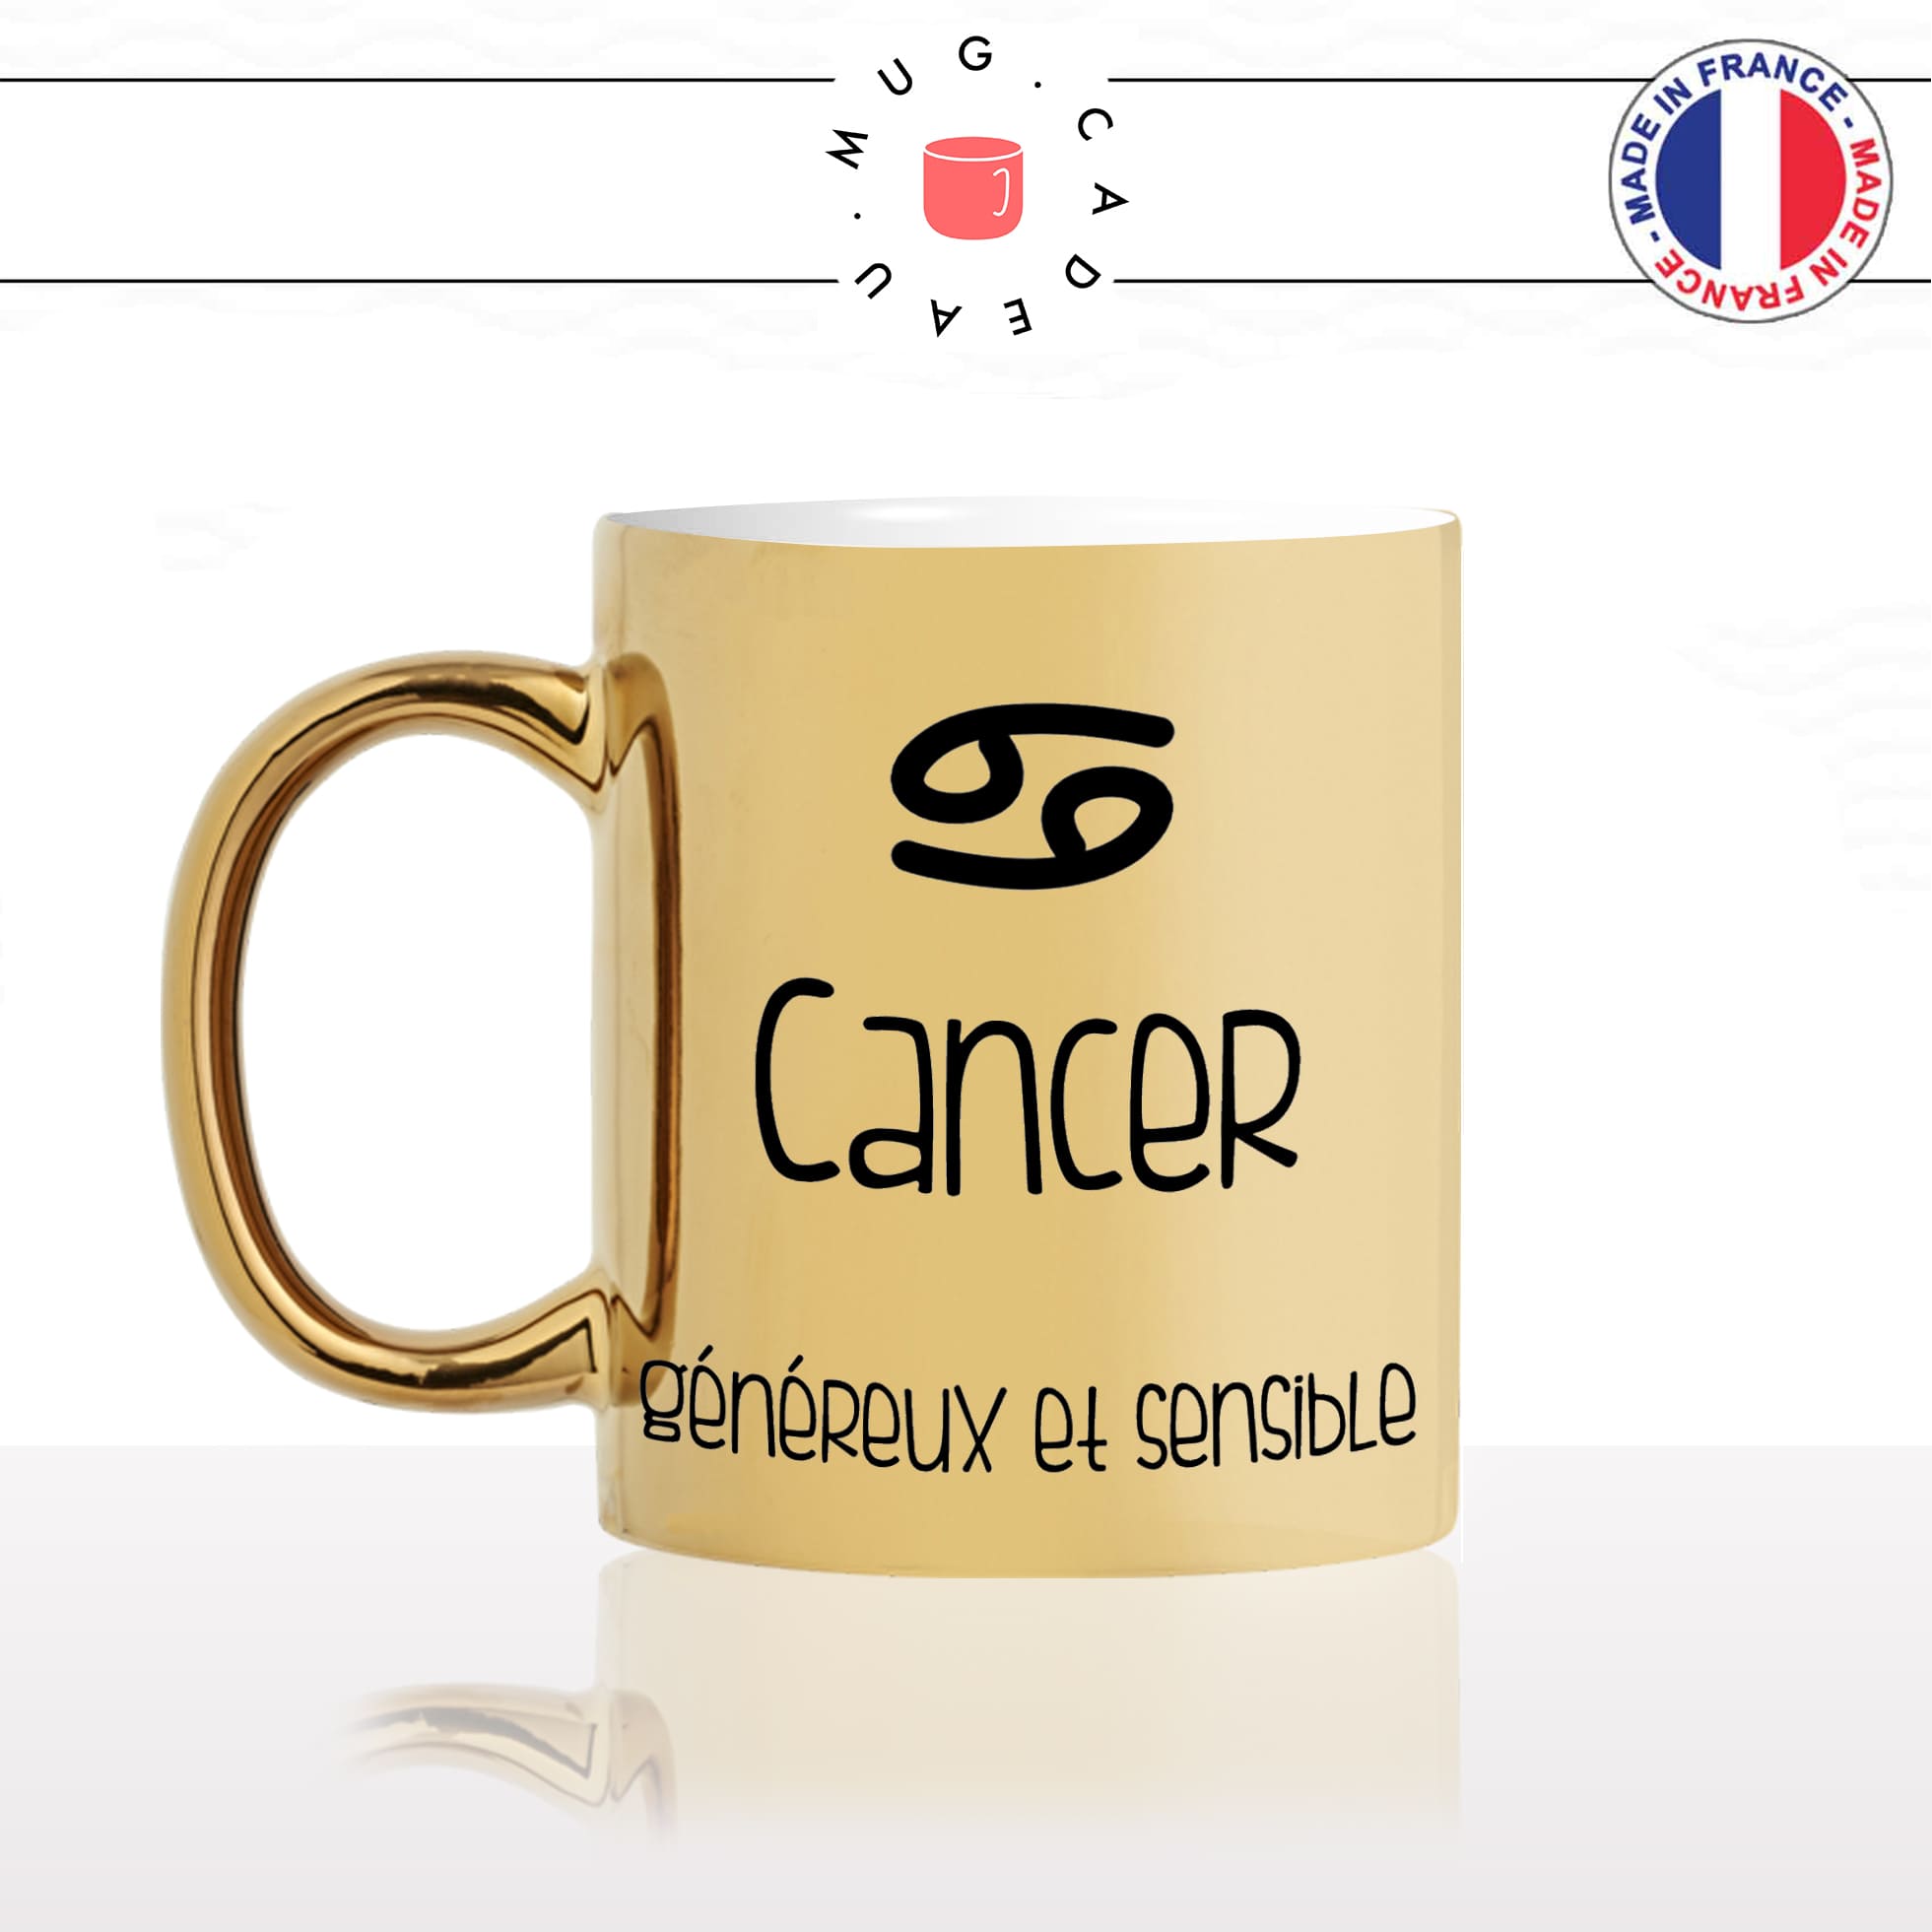 mug-tasse-or-doré-gold-unique-signe-astrologique-astrologie-astro-cncer-qualitées-homme-femme-fun-cool-idée-cadeau-original-personnalisé